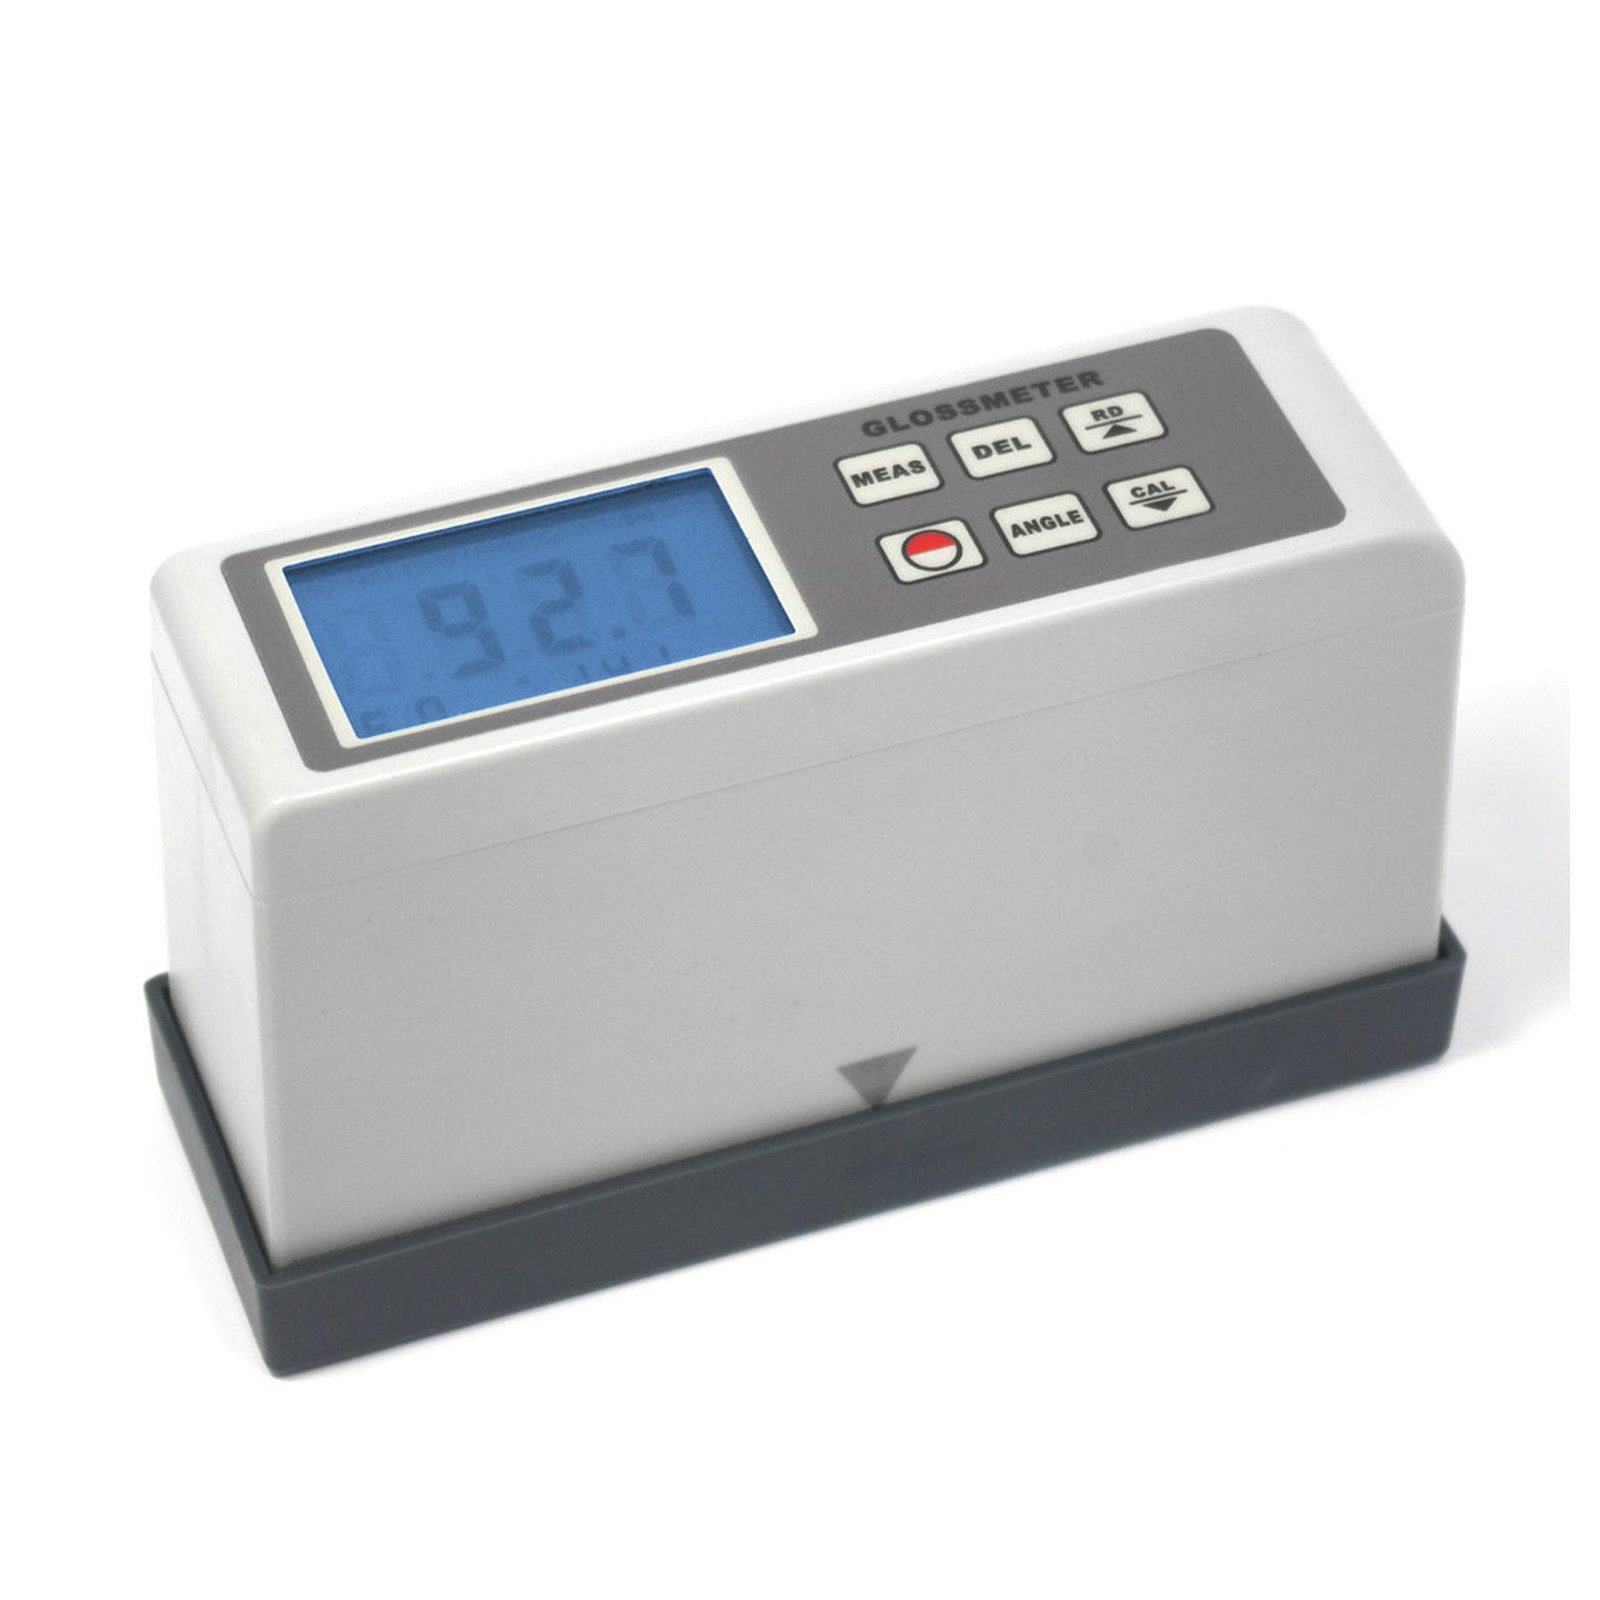 Portable Surface Gloss meter Tester AG-1268B 20 60 85 degree angle 0.1 ~ 200 GU 4